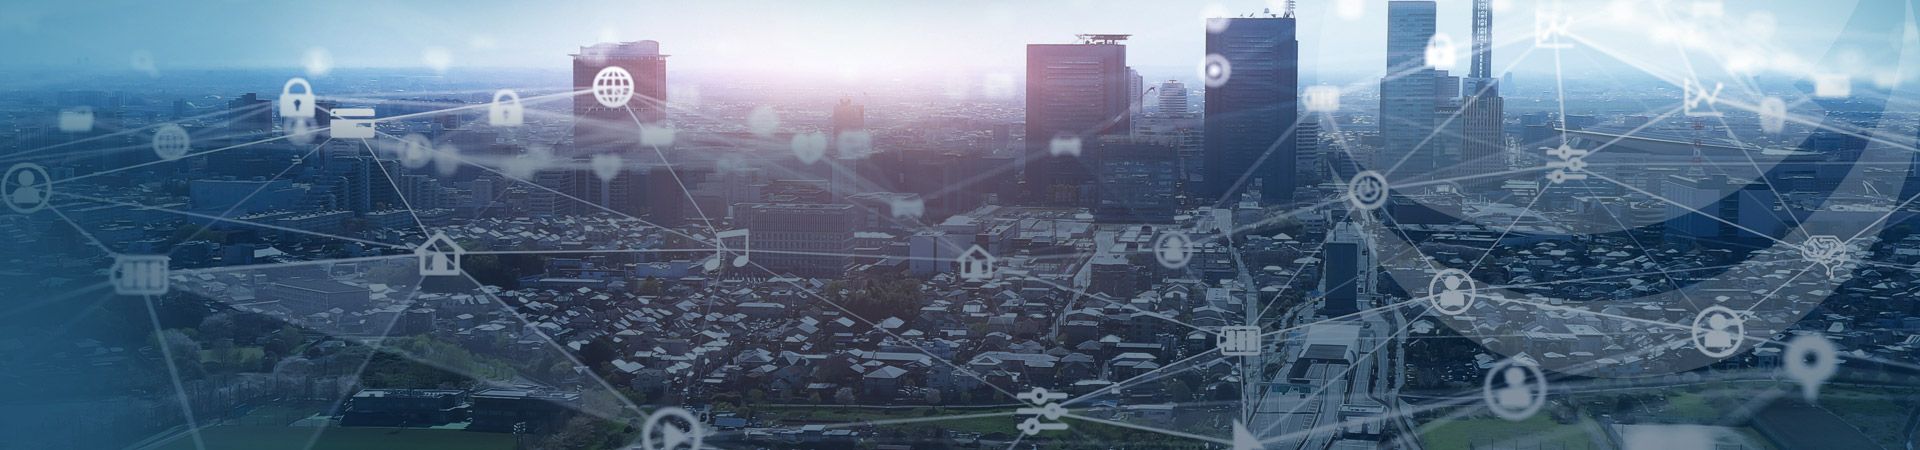 Die Entwicklung der Smart City mit Hilfe agiler Netzwerke